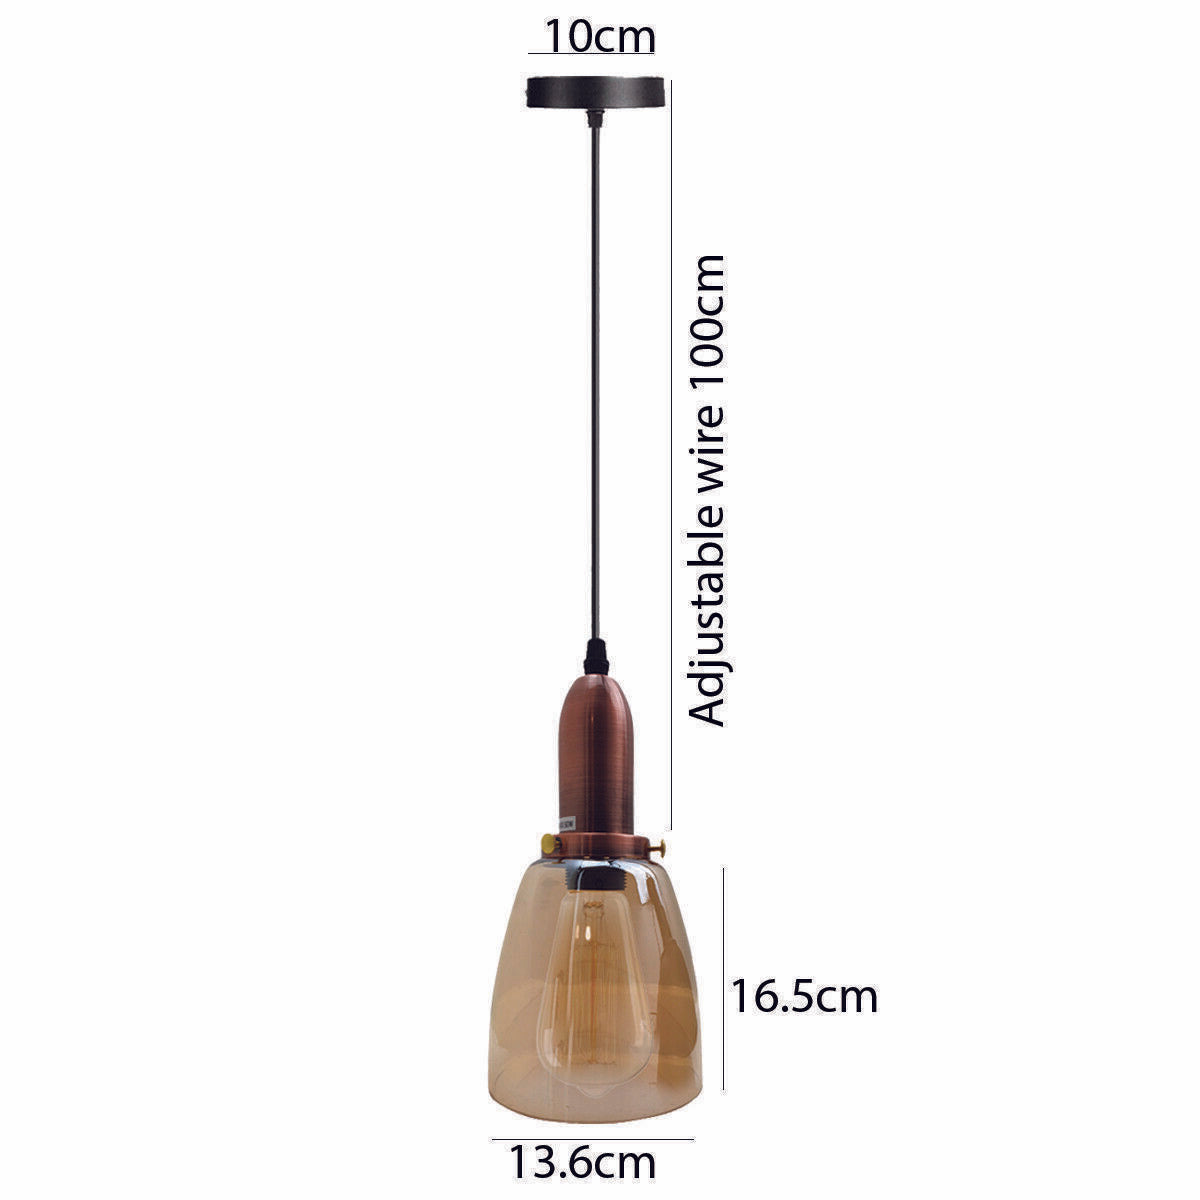 3 Head Retro Ceiling Light Glass Vintage Industrial E27 Base Holder Pendant Lamp UK~2095 - LEDSone UK Ltd